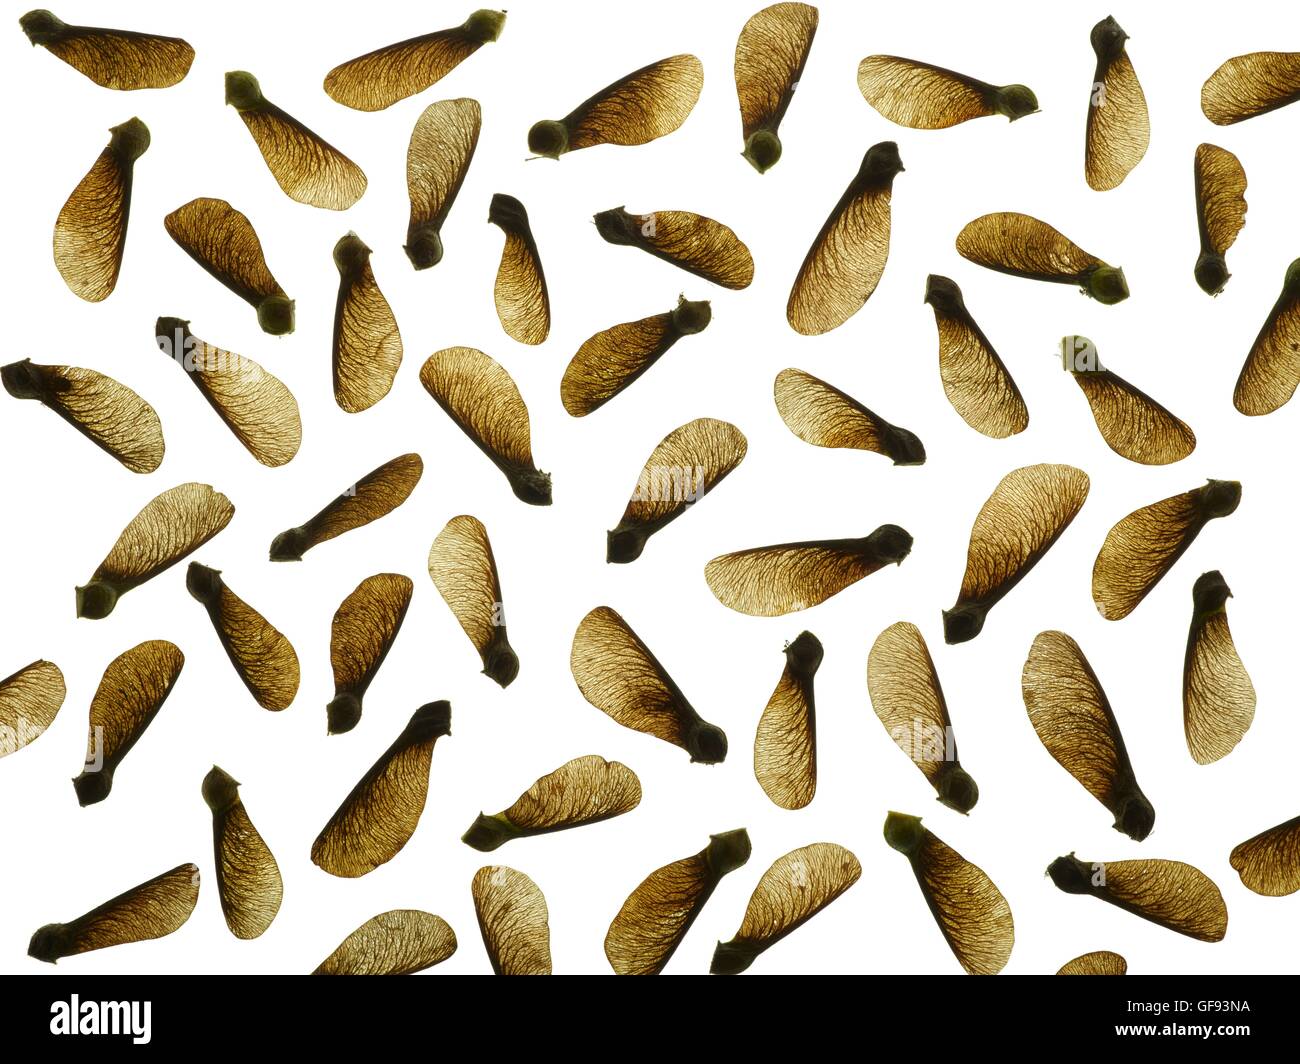 Sycamore semillas, Foto de estudio. Foto de stock